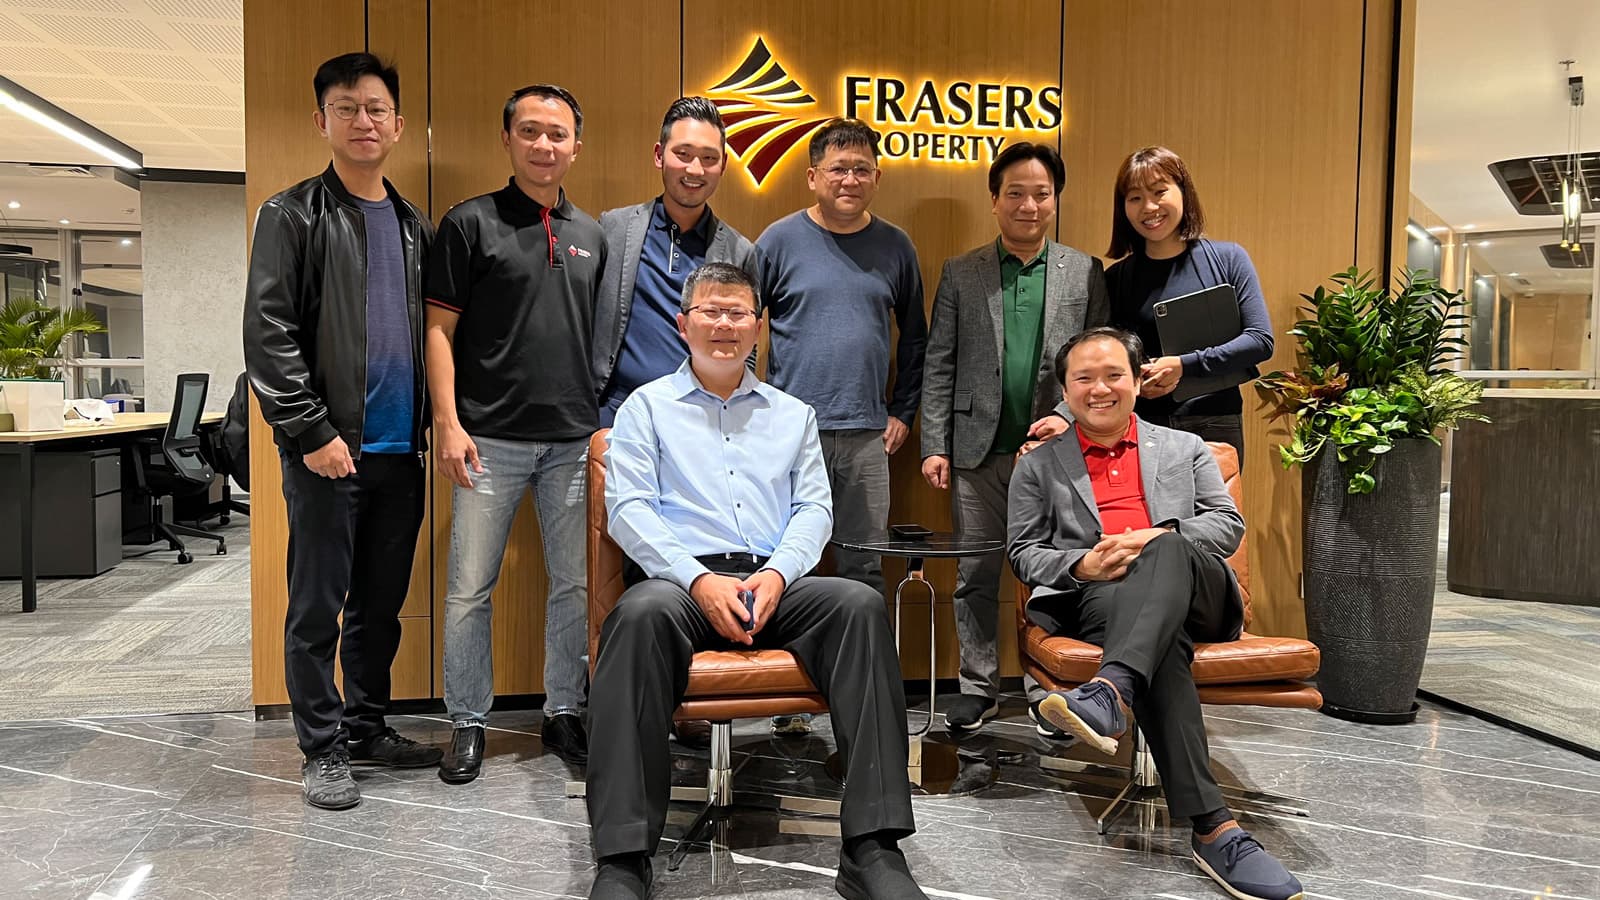 Frasers Property khai trương văn phòng đại diện tại Hà Nội trong chiến lược mở rộng thị trường phía Bắc Việt Nam